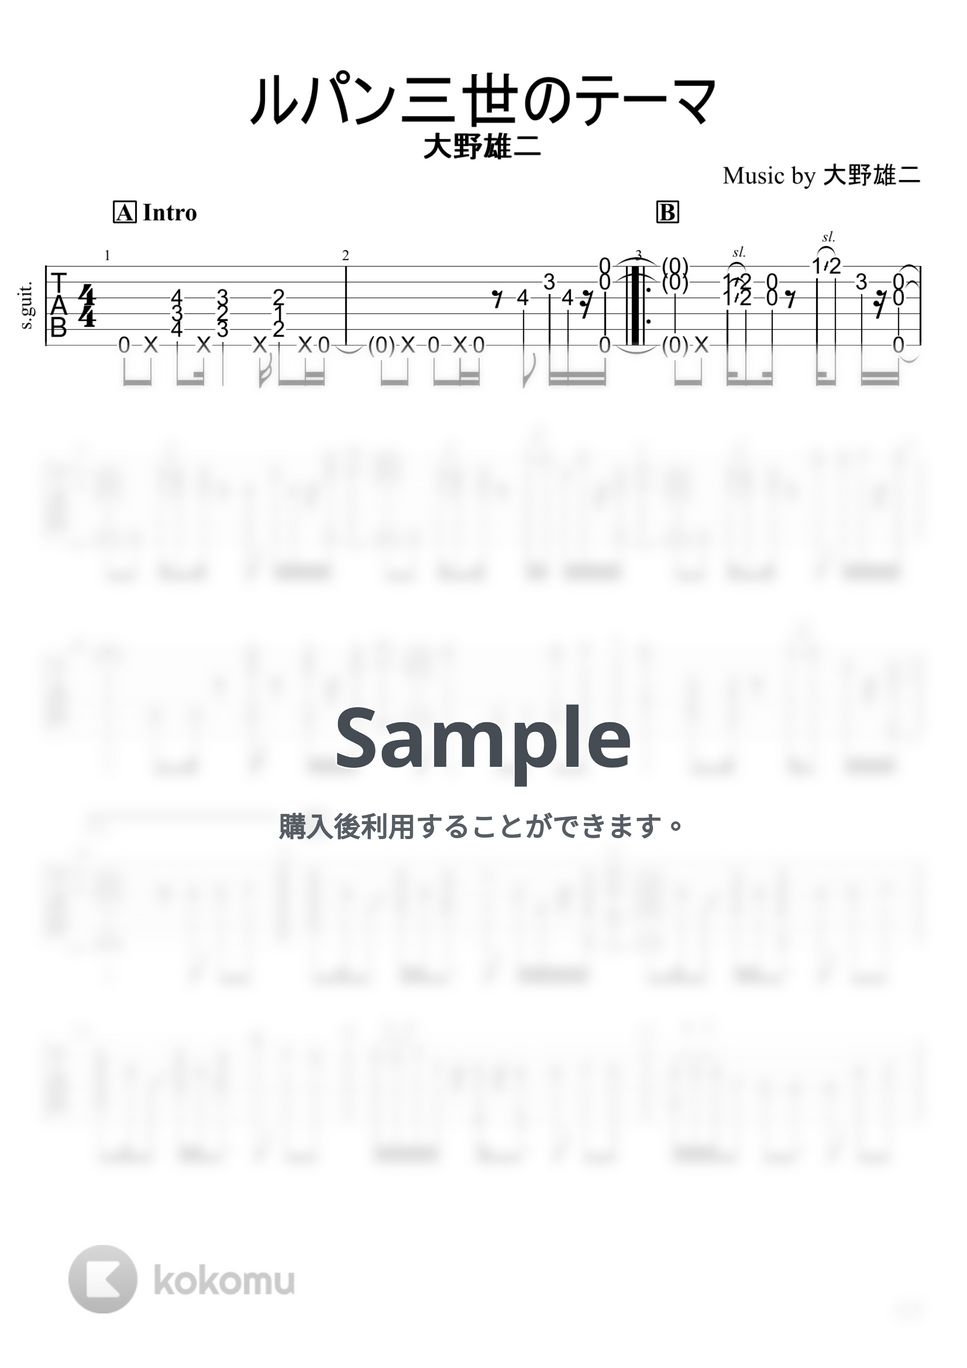 大野雄二 - ルパン三世のテーマ (ソロギター) by 店長【なんか弾いて屋】